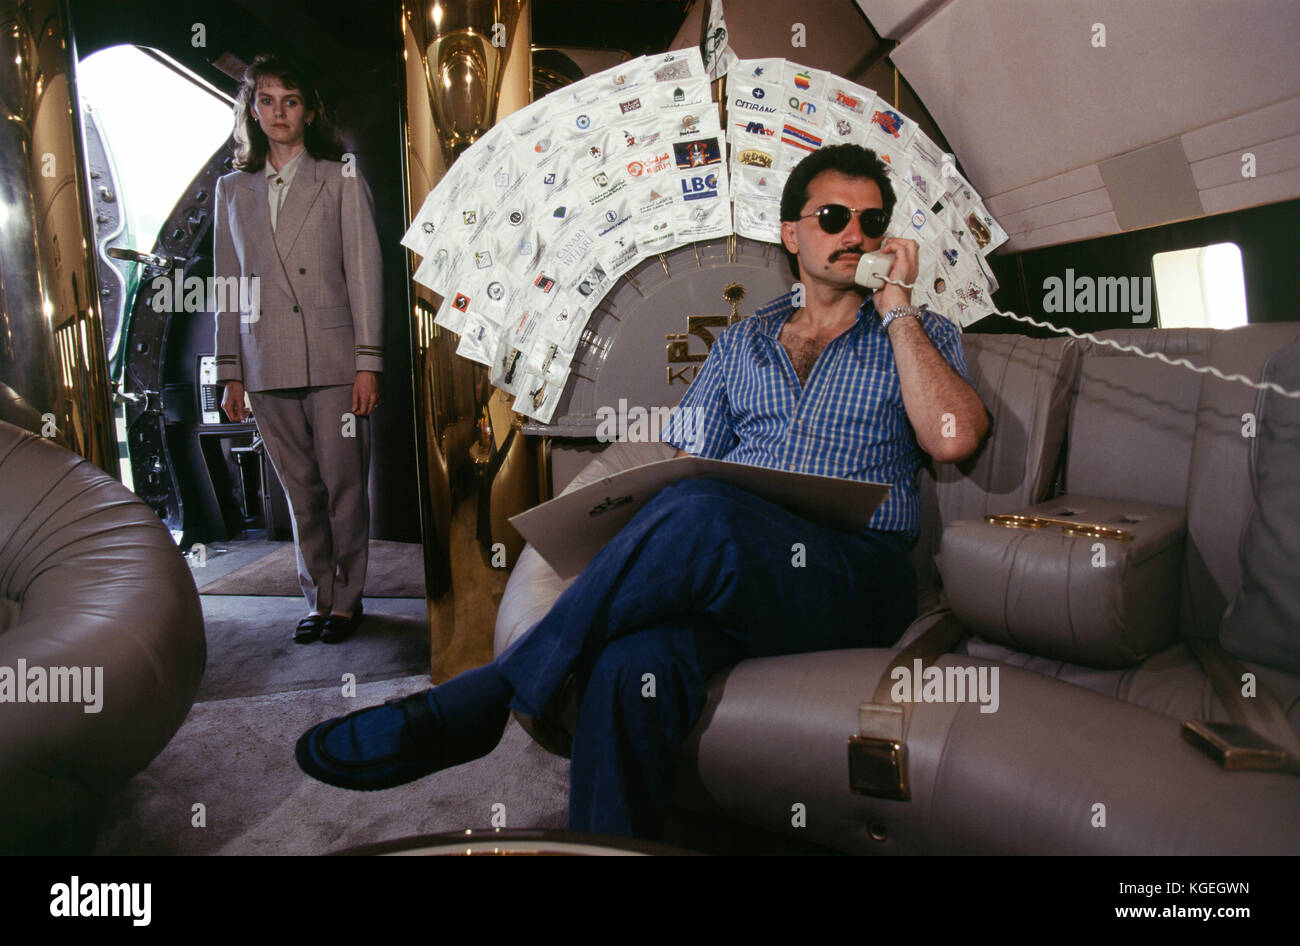 Le prince saoudien al-Waleed bin Talal bin Abdulaziz Al Saud, entrepreneur, investisseur et philanthrope, et membre de la famille royale saoudienne, avec ses jets privés et d'hélicoptères à l'aéroport de Nice où il étés avec ses enfants. Ils restent à bord de son 'kingdom 5kr', un yacht de 85 mètres, ont achetés 'trump princess' de Donald Trump dans les années 1980, au cours de ses problèmes financiers, qui l'avait à son tour acheté "nabila" de l'arabie d'armes khashoggi, temps pendant lequel il est apparu que la soucoupe dans james bond's 'ne jamais dire plus jamais", dans la région de Nice, France en 1997. al-Waleed a été arrêté le 4 novembre 2017 dans un Banque D'Images